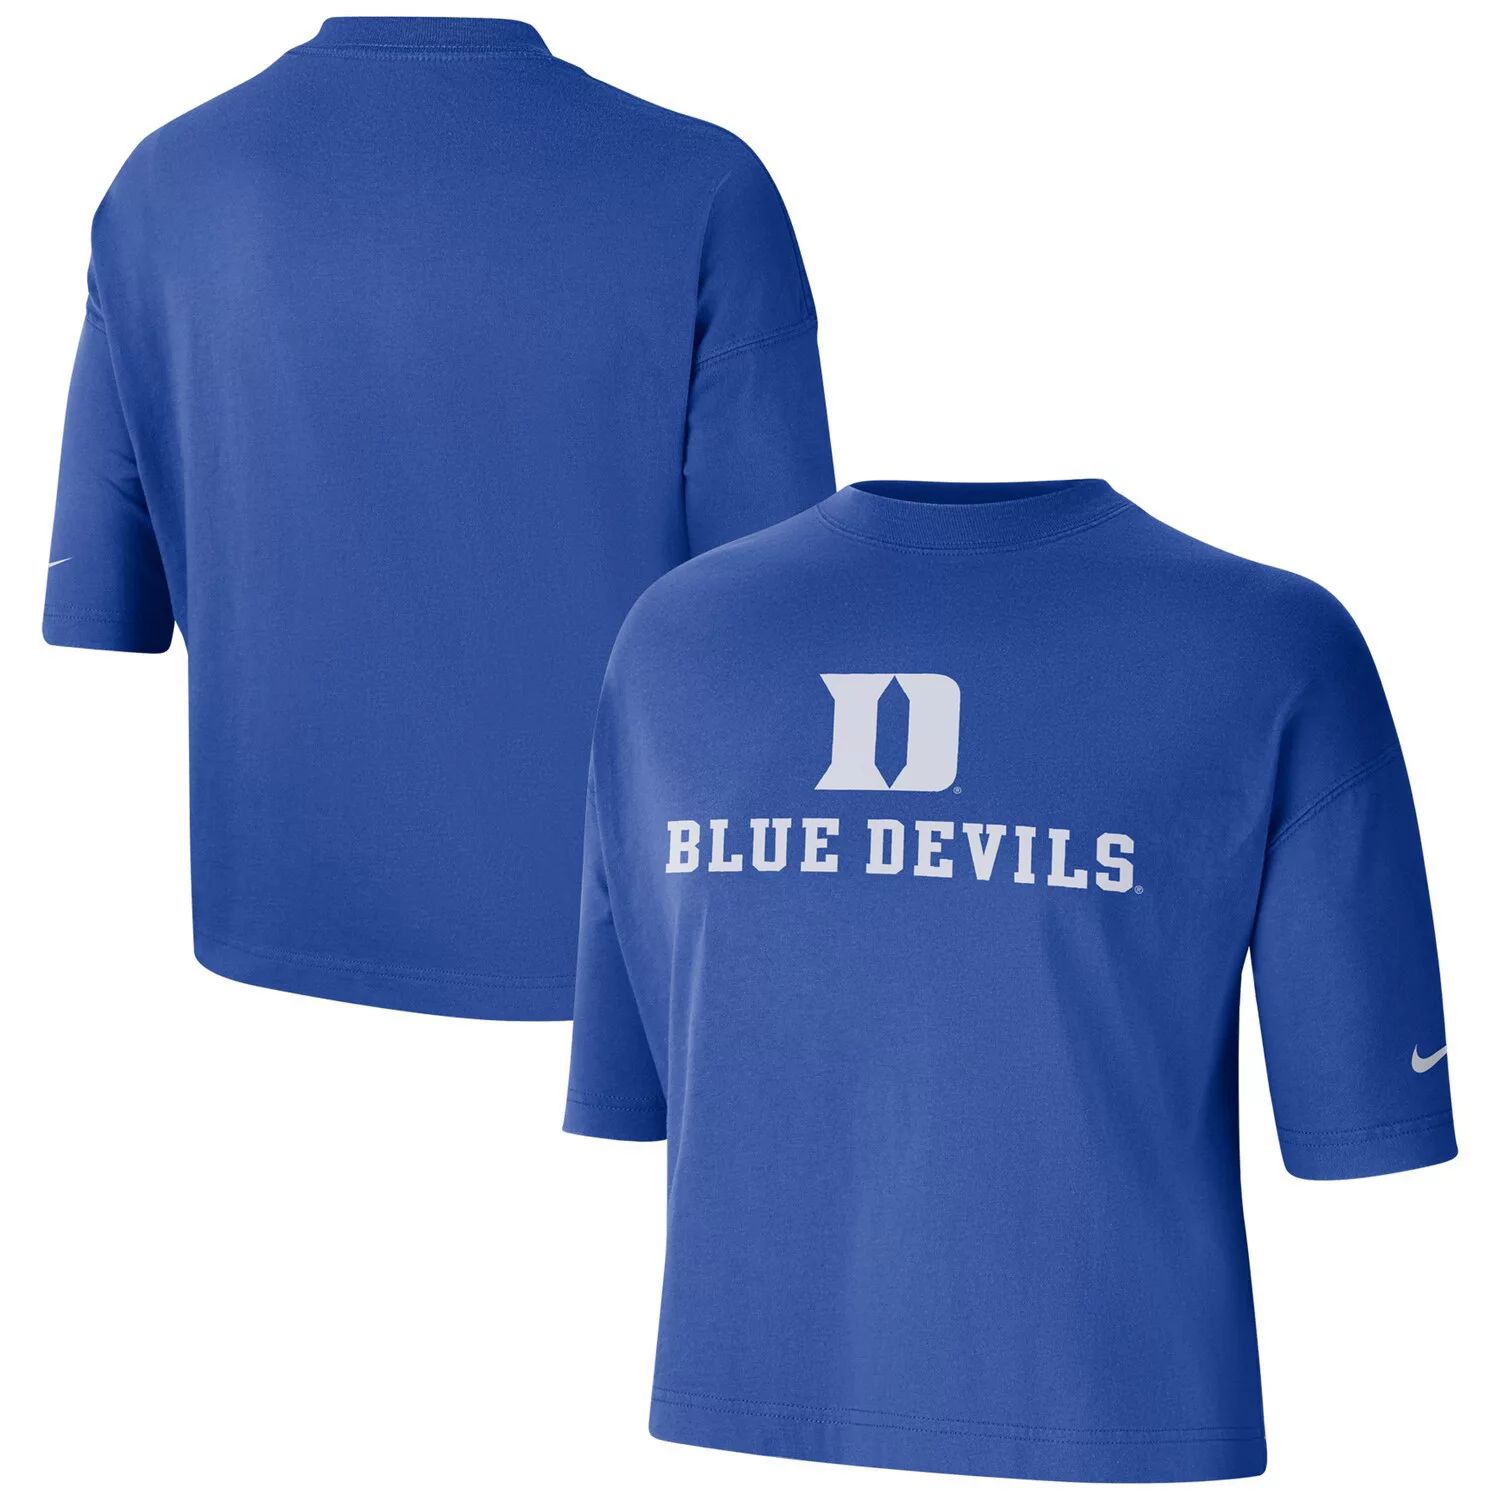 Женская укороченная футболка Nike Royal Duke Blue Devils Nike